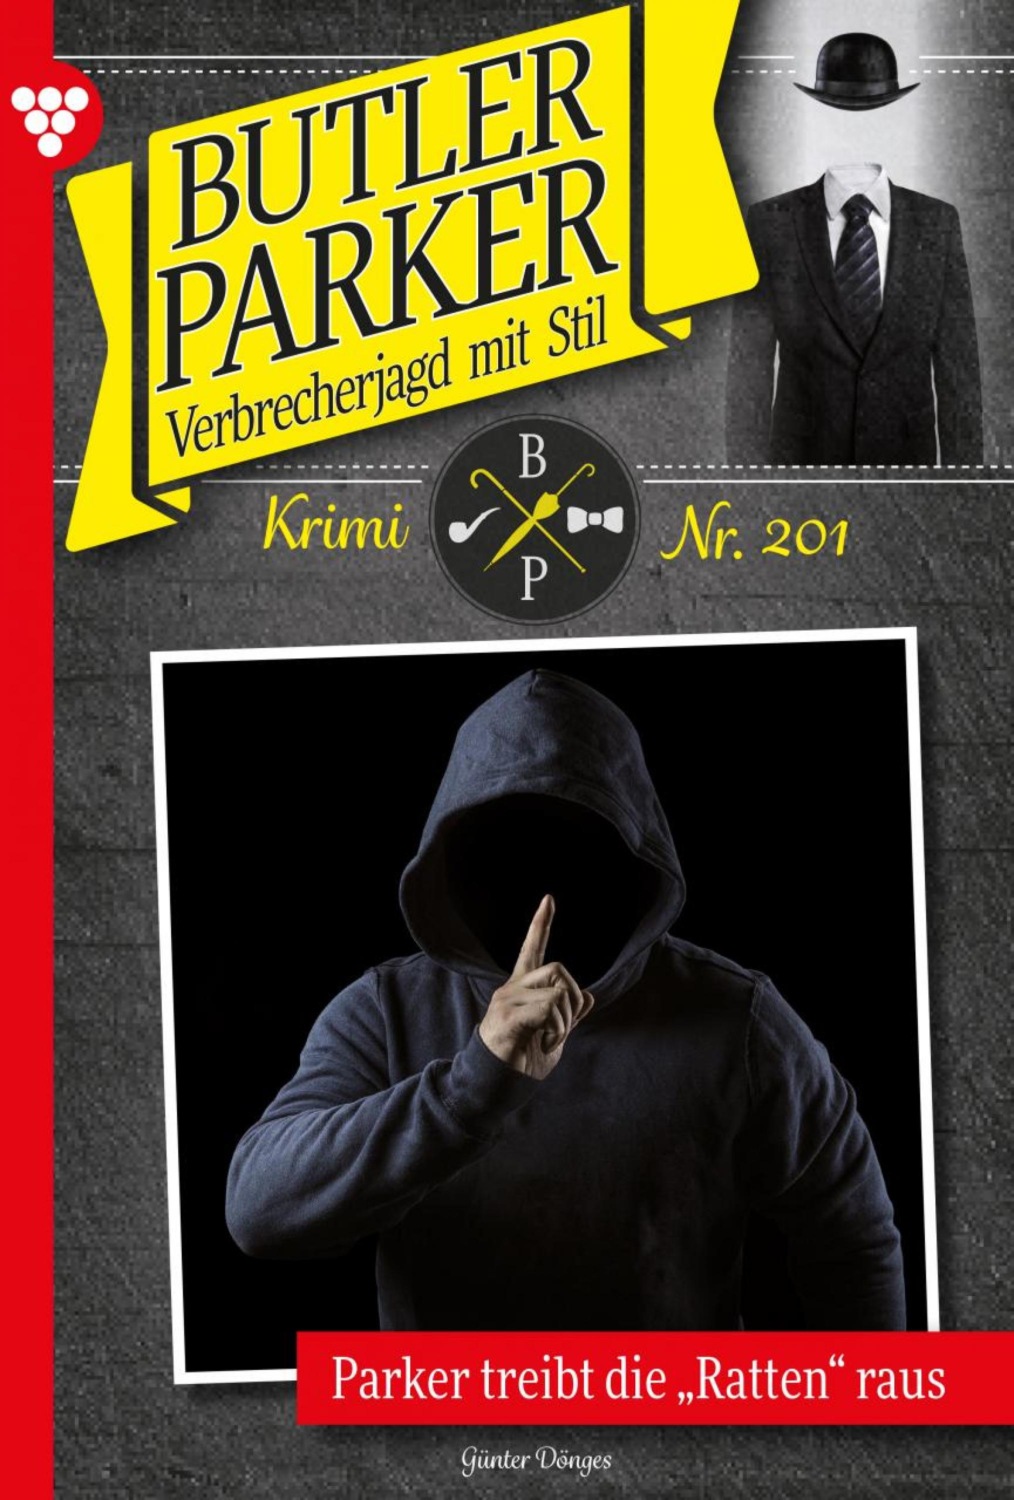 Butler Parker 201 – Kriminalroman. Parker treibt die "Ratten" raus